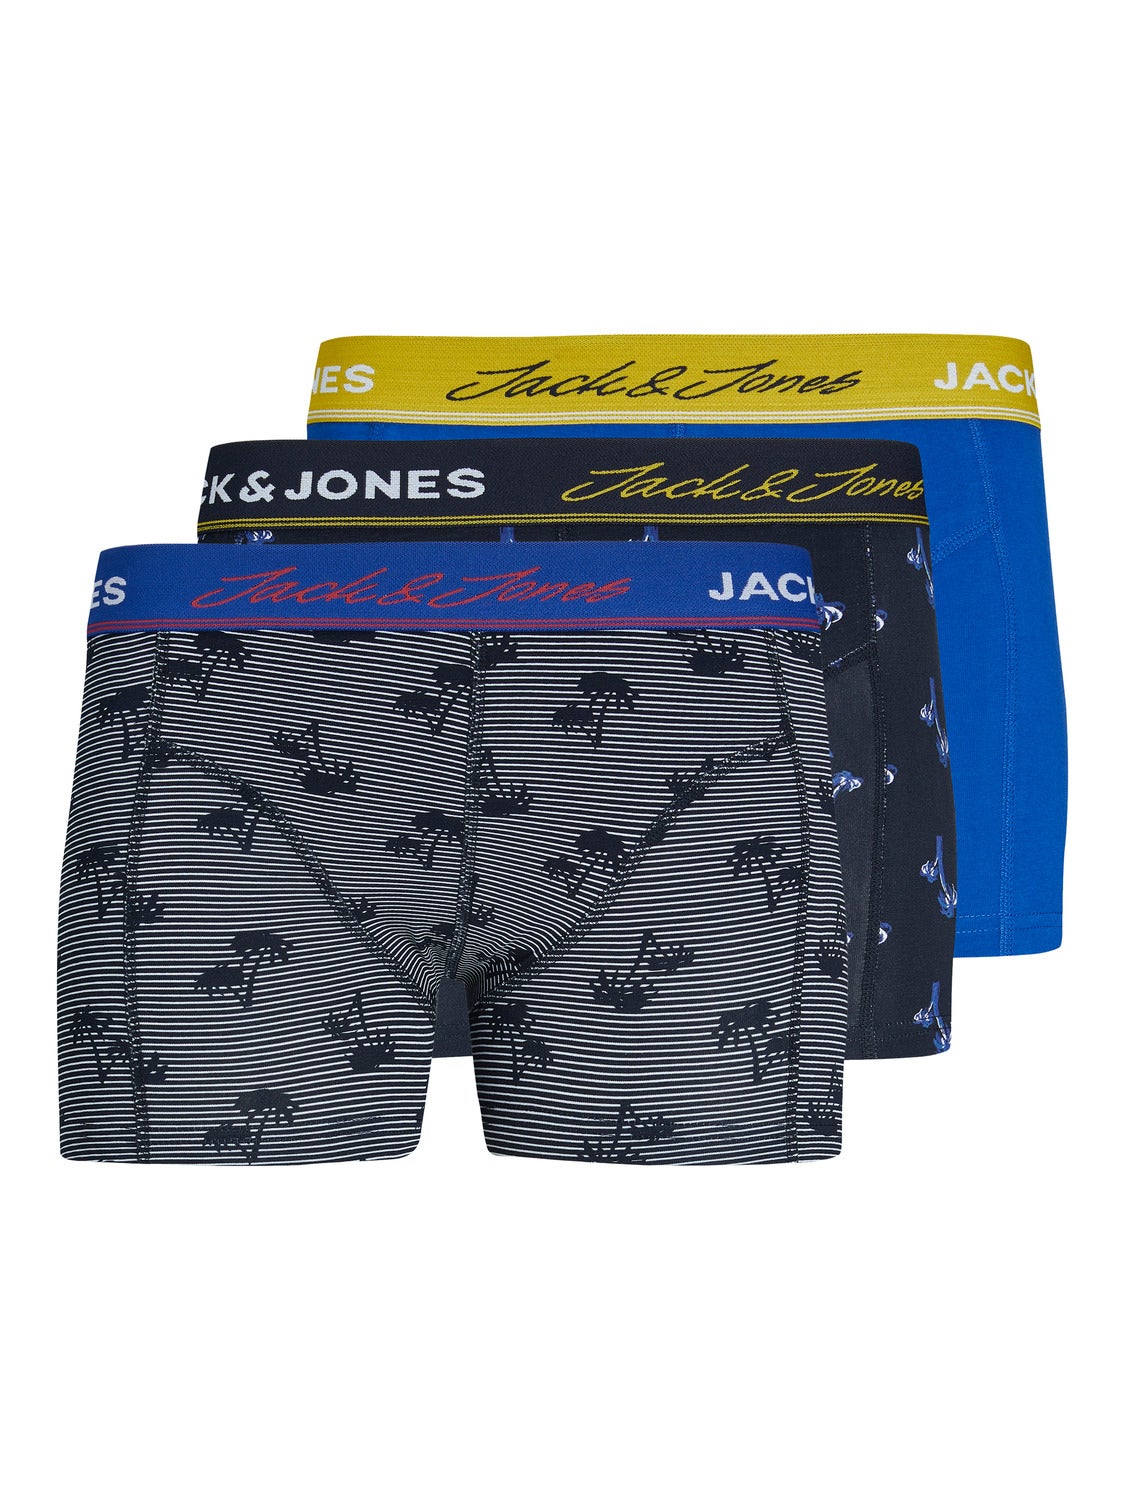 Blue/Black/Gray L Jack & Jones Underpant MEN FASHION Underwear & Nightwear discount 56% 